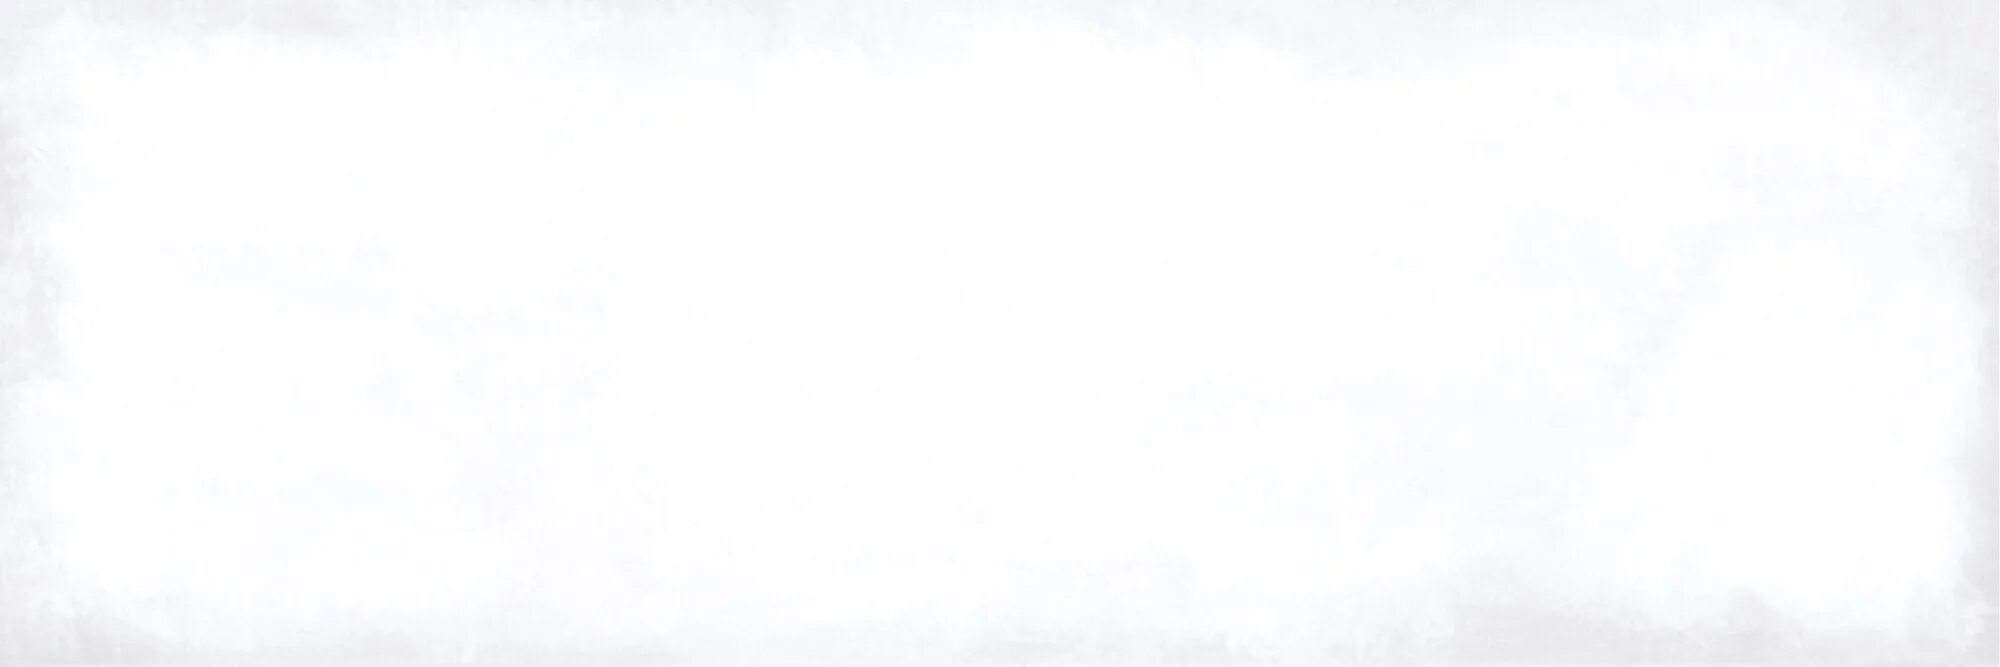 10 200 600 200. Парижанка плитка Ласселсбергер. Плитка Парижанка белая. Lb-Ceramics, плитка керамическая "Парижанка", белая, 20x60, настенная,1064-0230. Плитка коллекция Парижанка.